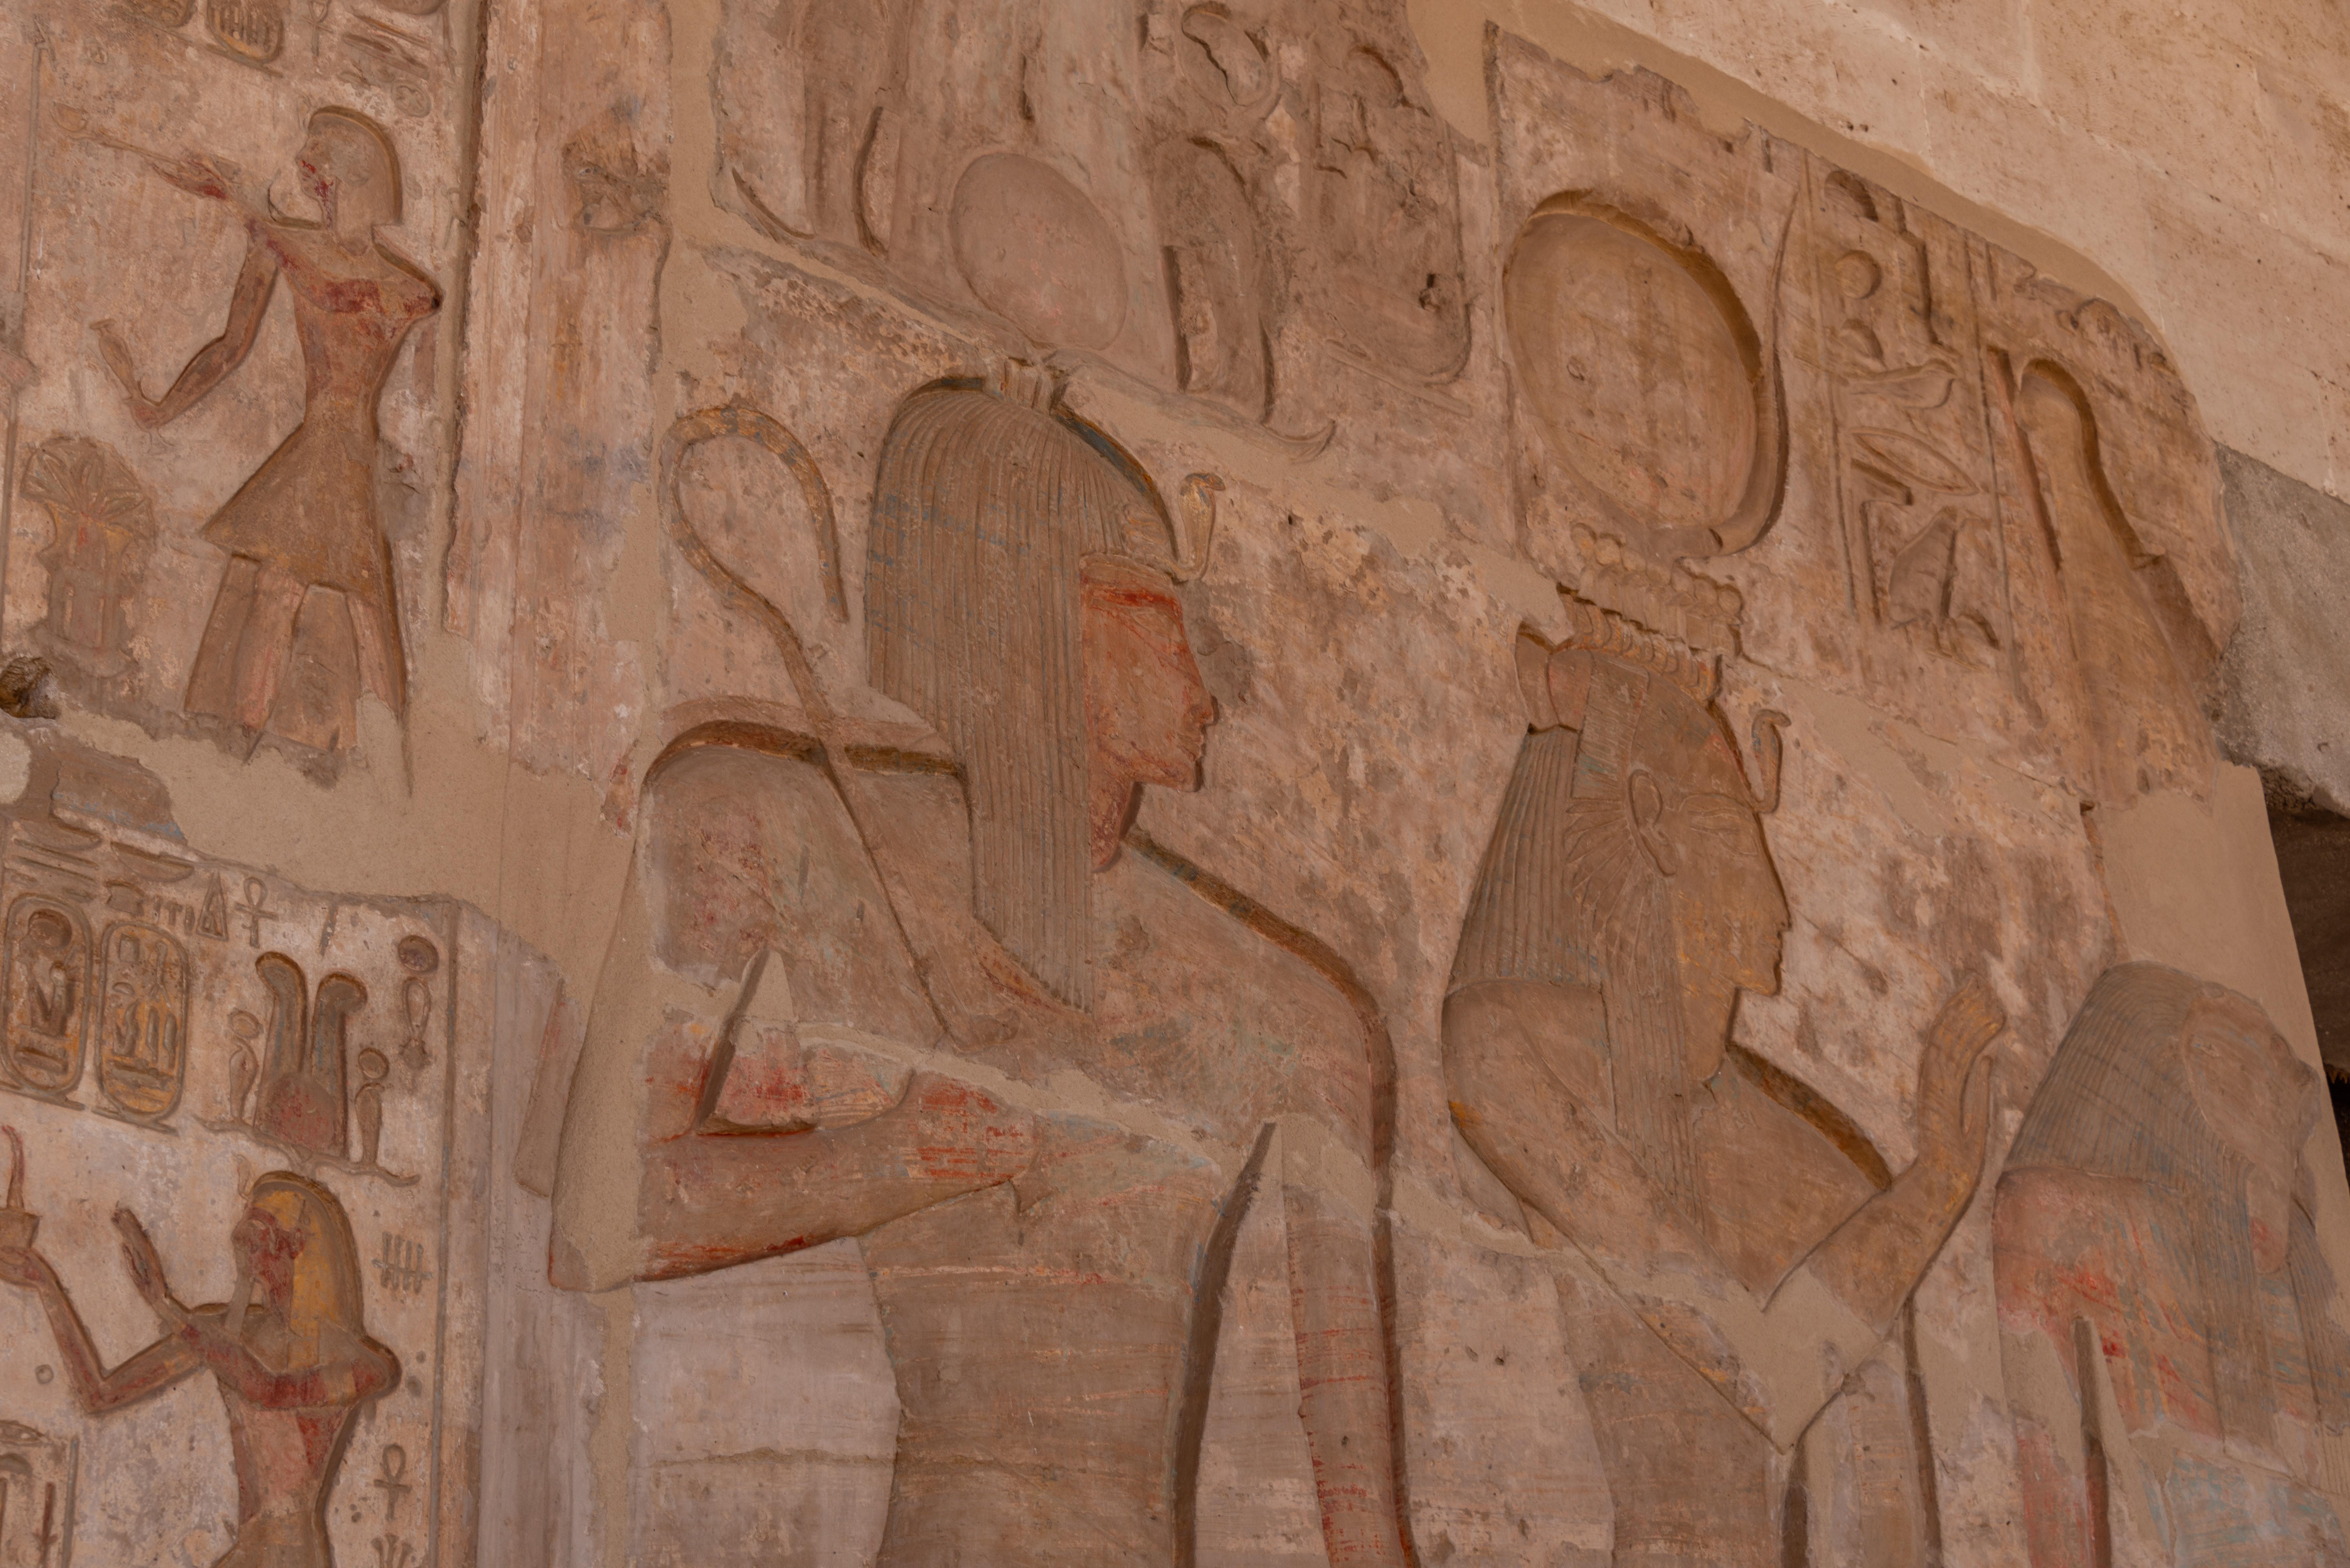 How did Hatshepsut impact Egypt? 